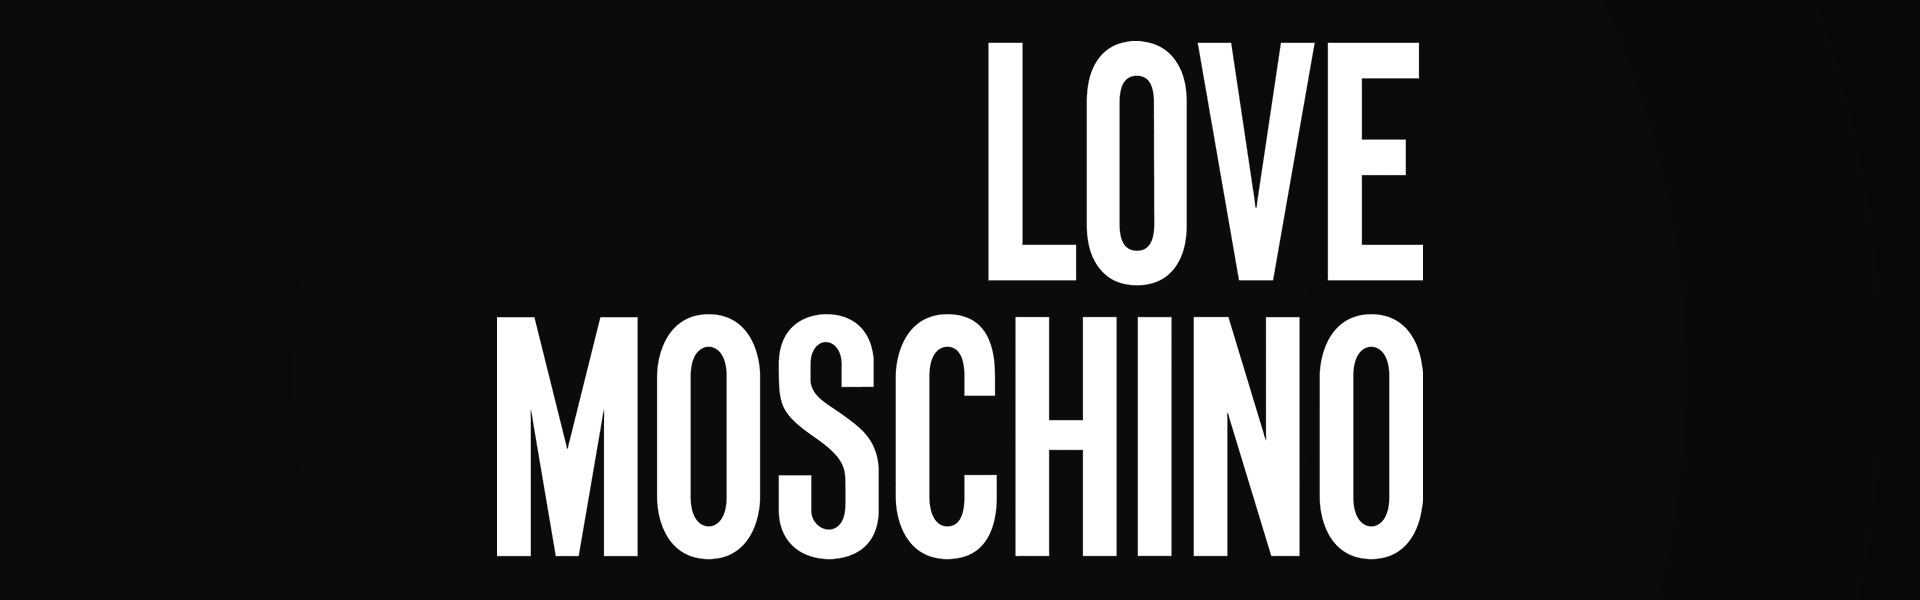 Love Moschino naisten käsilaukku, pinkki 